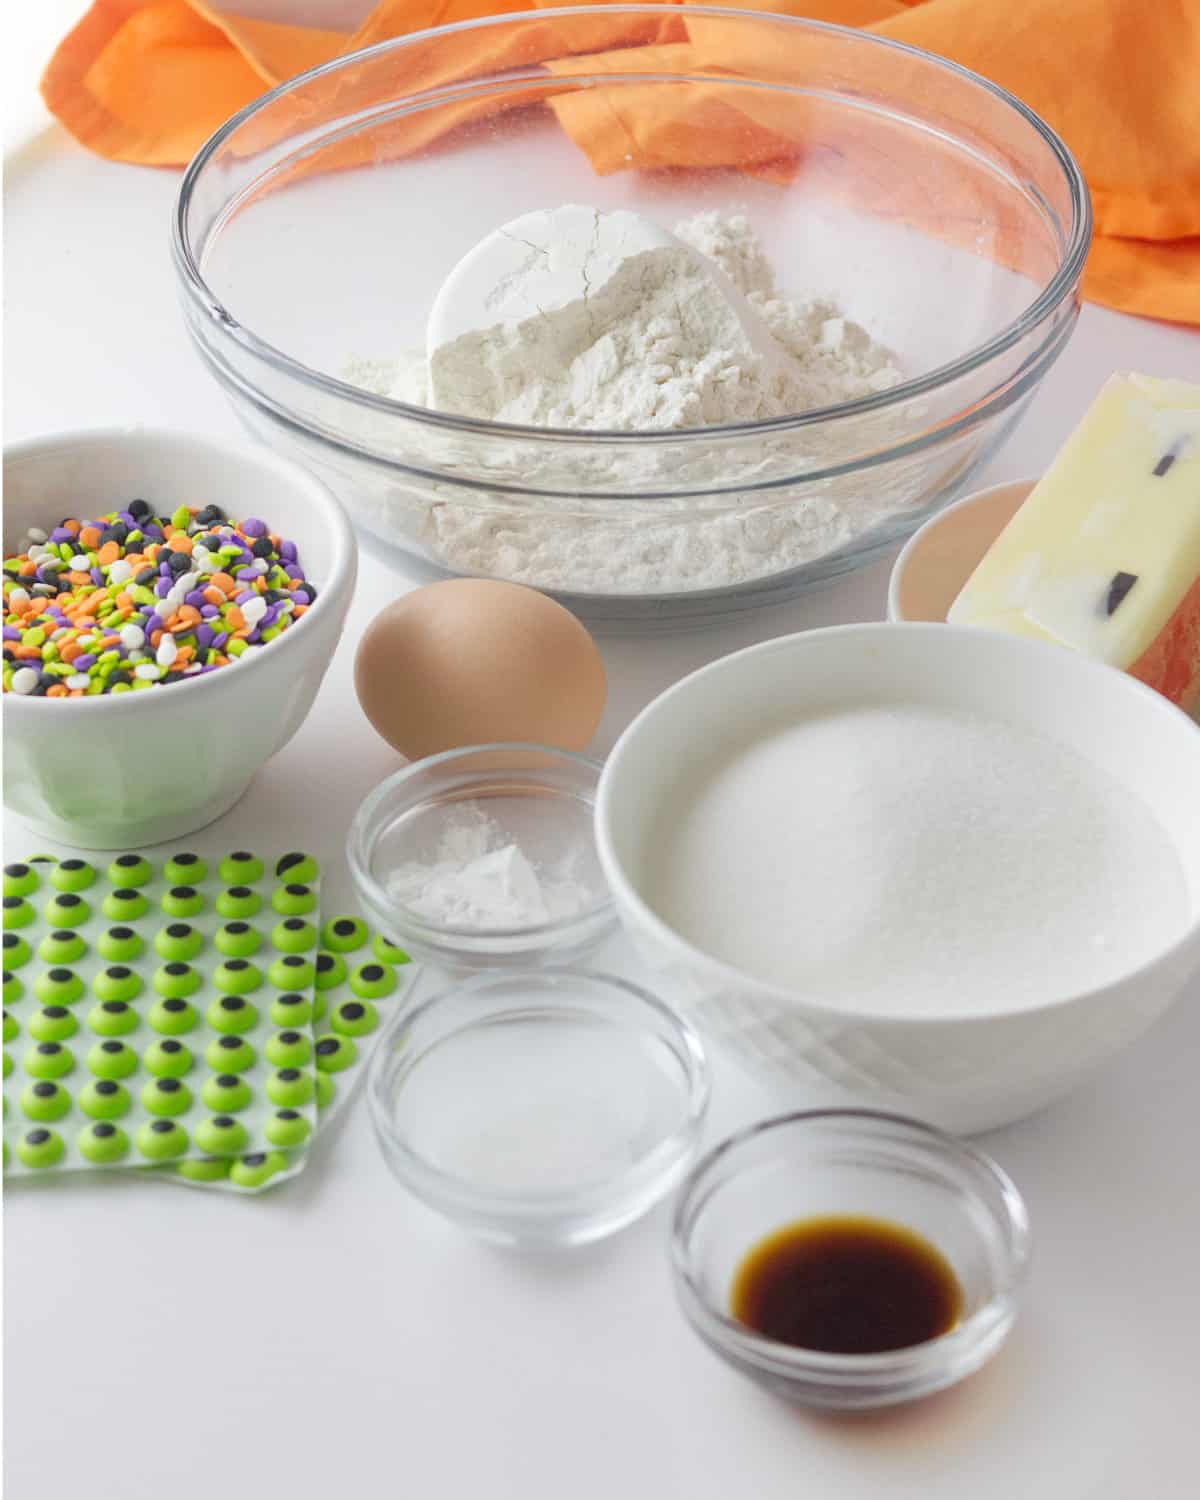 ingredients for sprinkle sugar cookies.